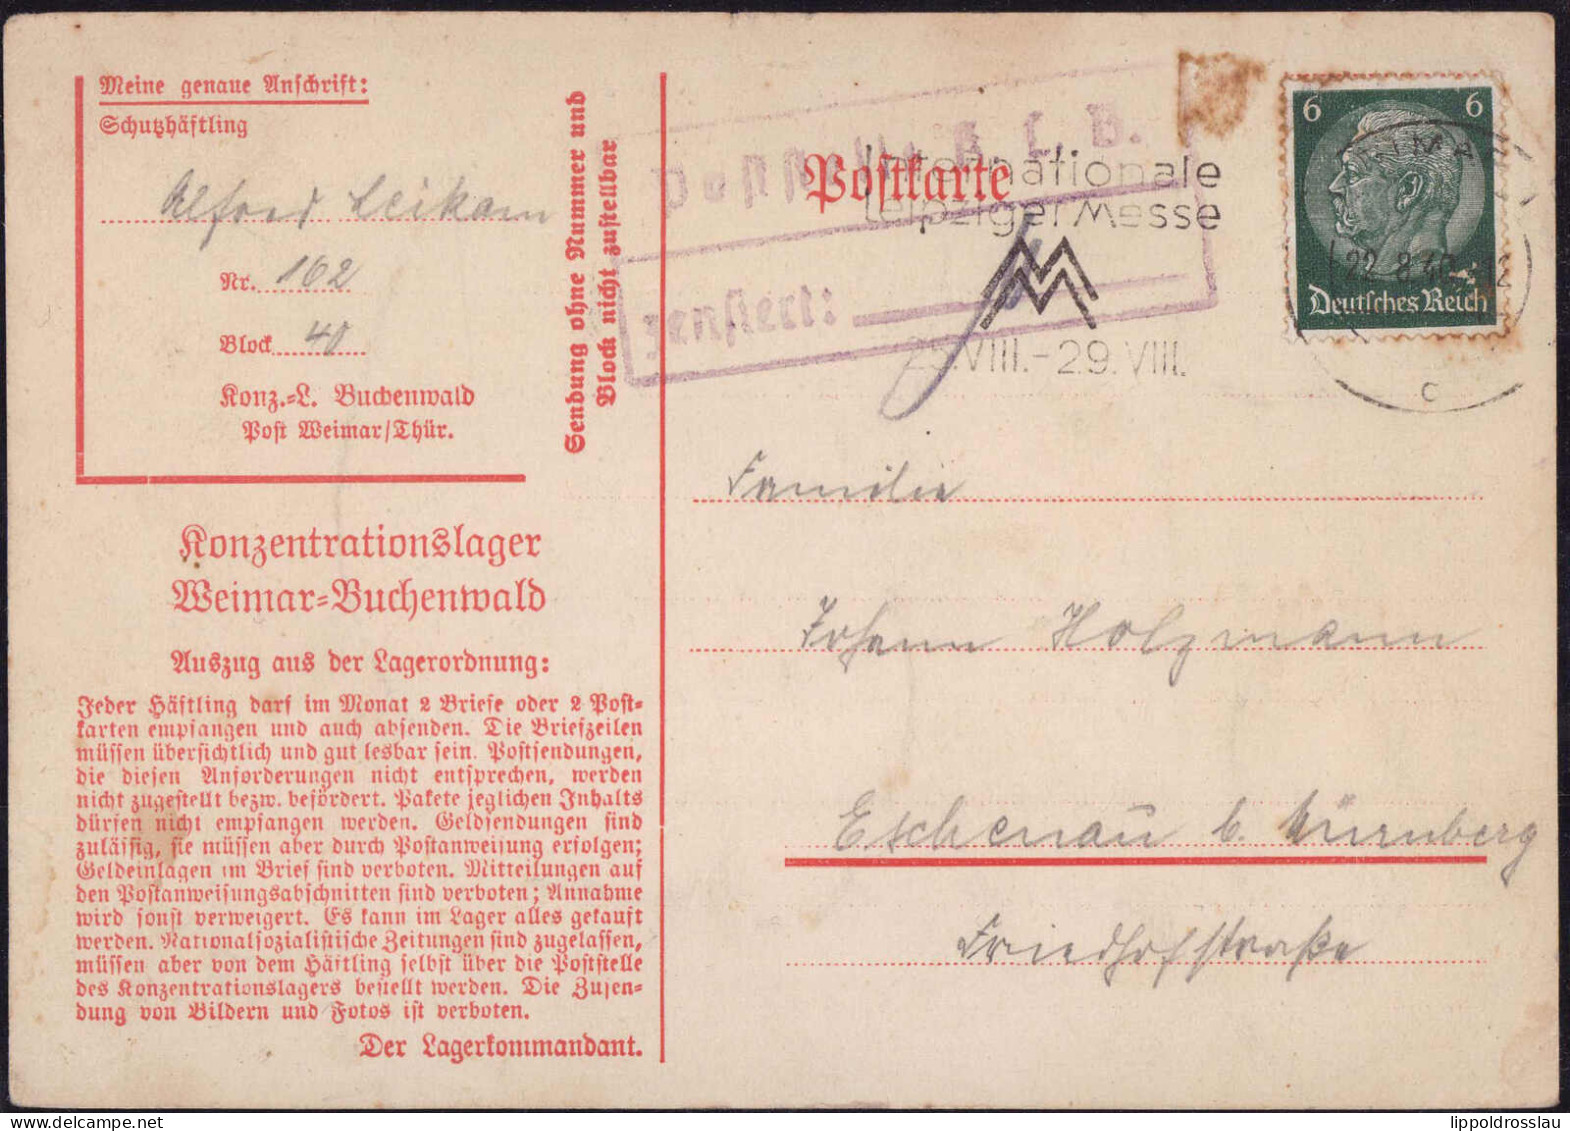 Gest. KZ-Post Weimar-Buchenwald 1940 Nach Eschenau - Autres & Non Classés